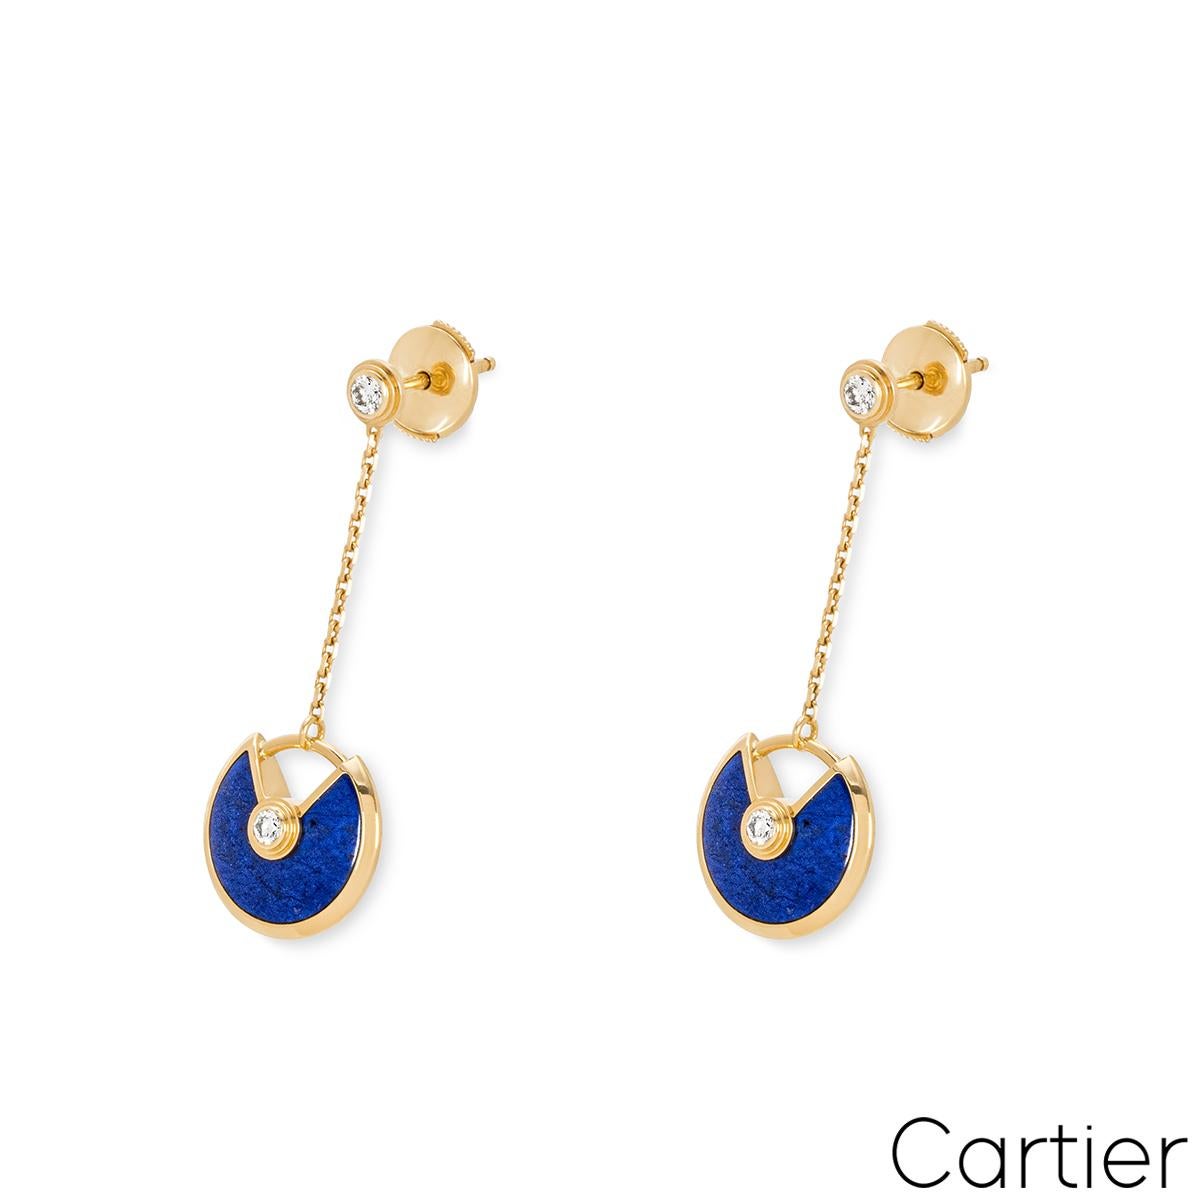 Ein Paar Ohrringe aus 18 Karat Gelbgold mit Lapislazuli und Diamanten von Cartier aus der Kollektion Amulette de Cartier. Die Ohrringe bestehen aus einem einzelnen runden Diamanten im Brillantschliff, an dem ein Lapislazuli-Talisman hängt, mit einem